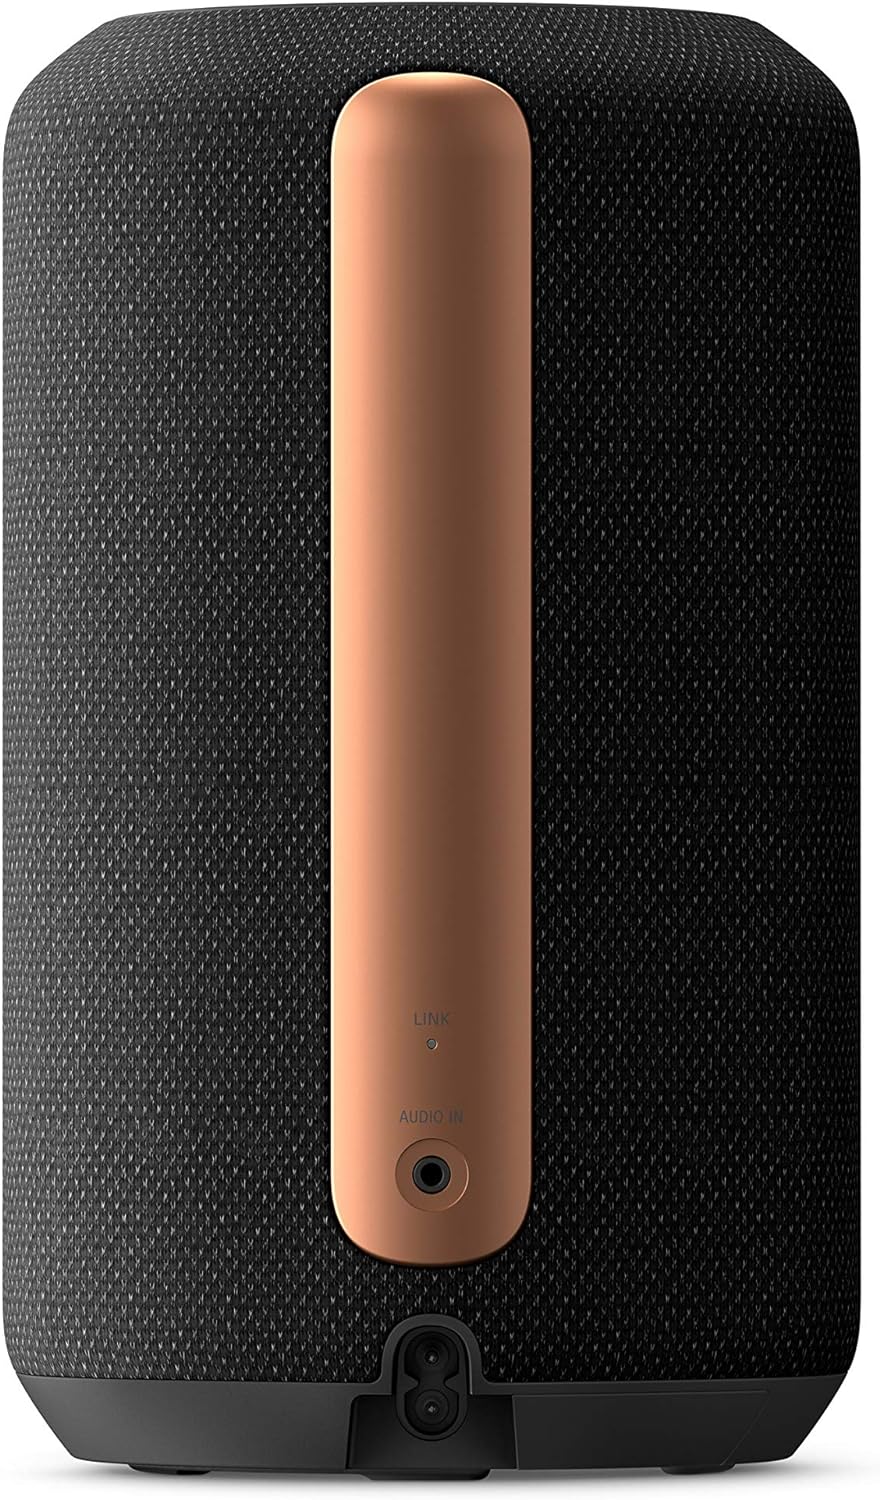 Sony Bluetooth Wireless Speaker